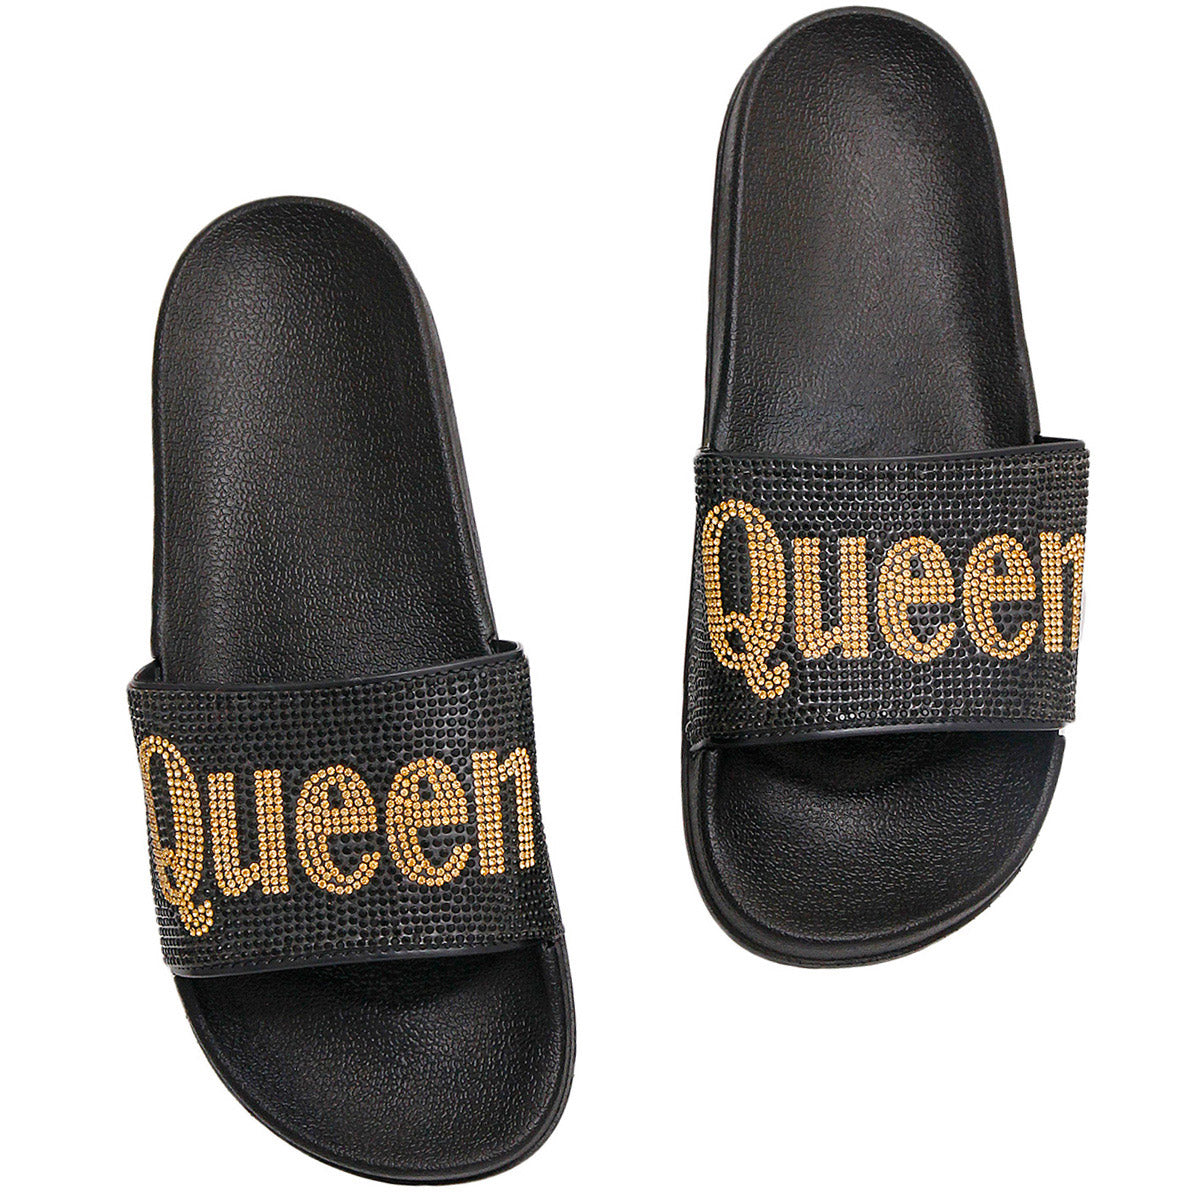 Size 12 Queen Black Slides